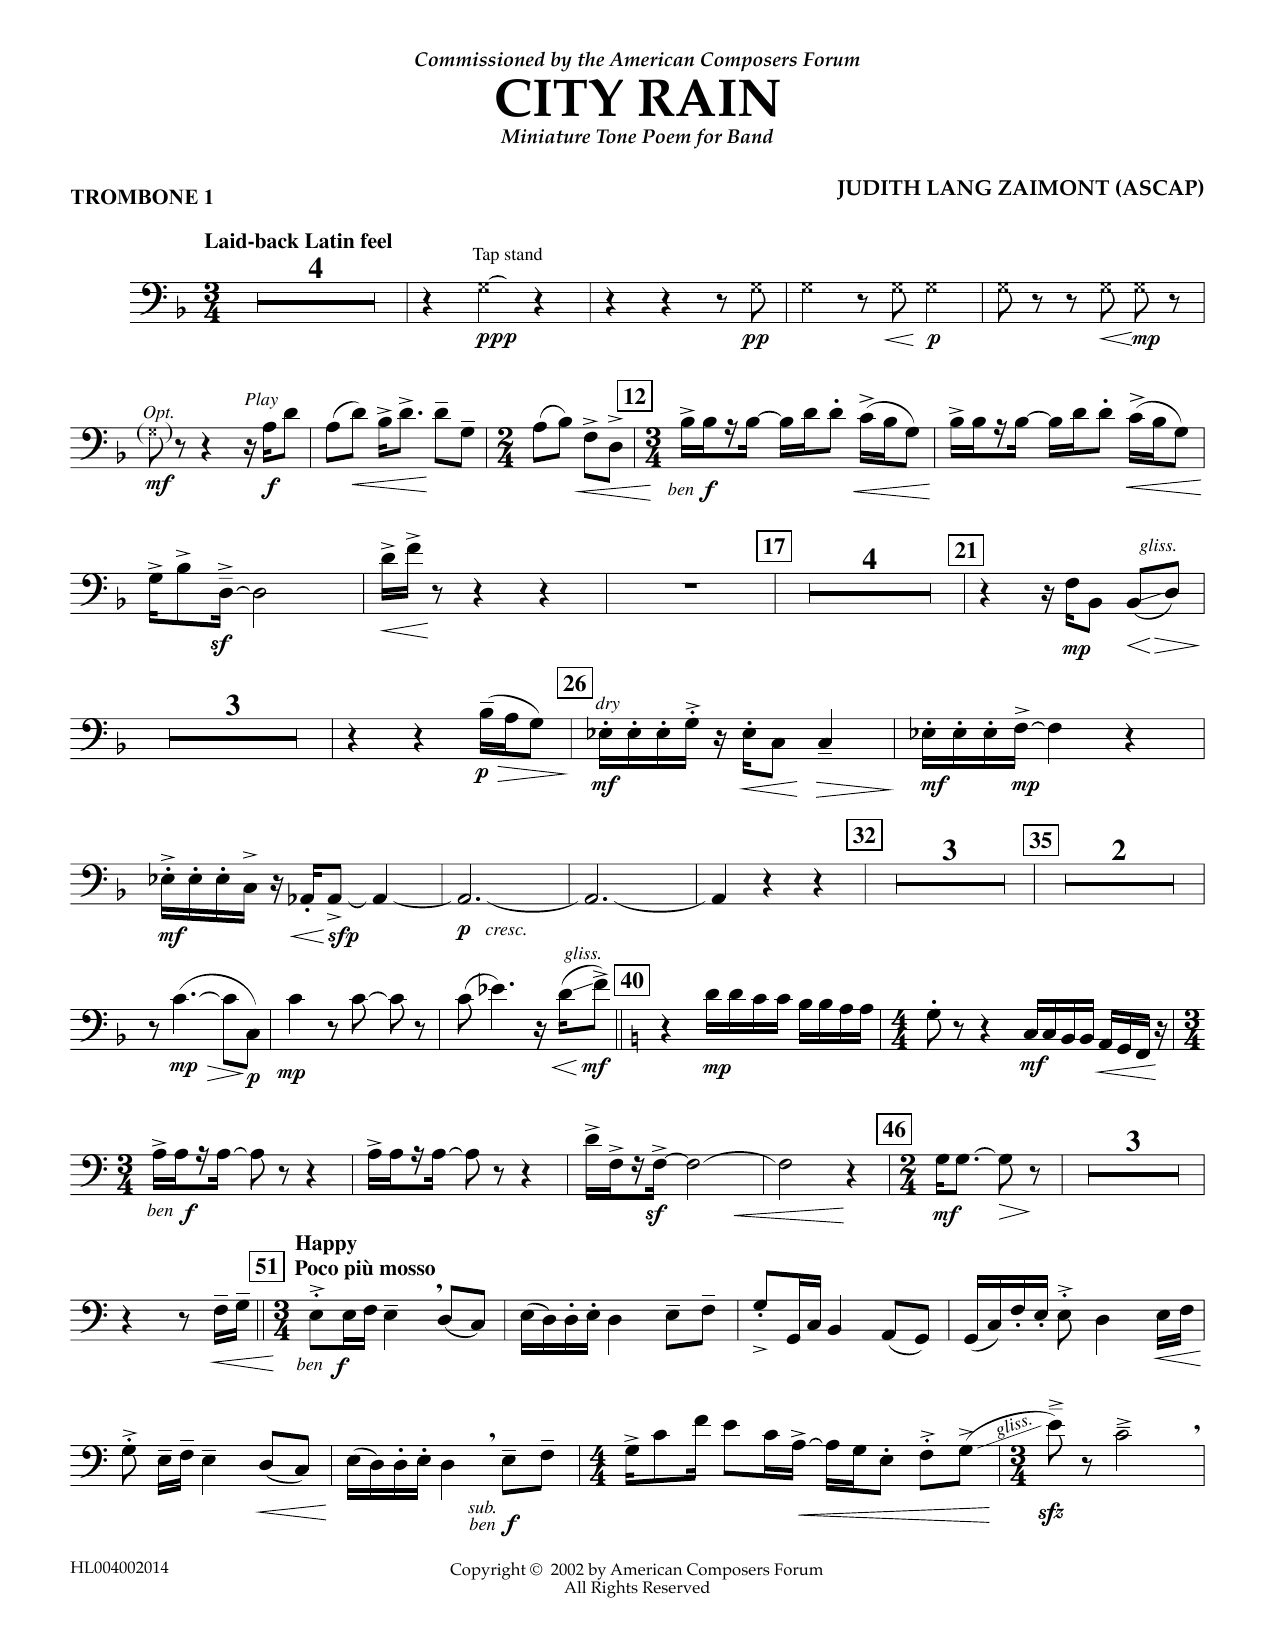 Download Judith Zaimont City Rain - Trombone 1 Sheet Music